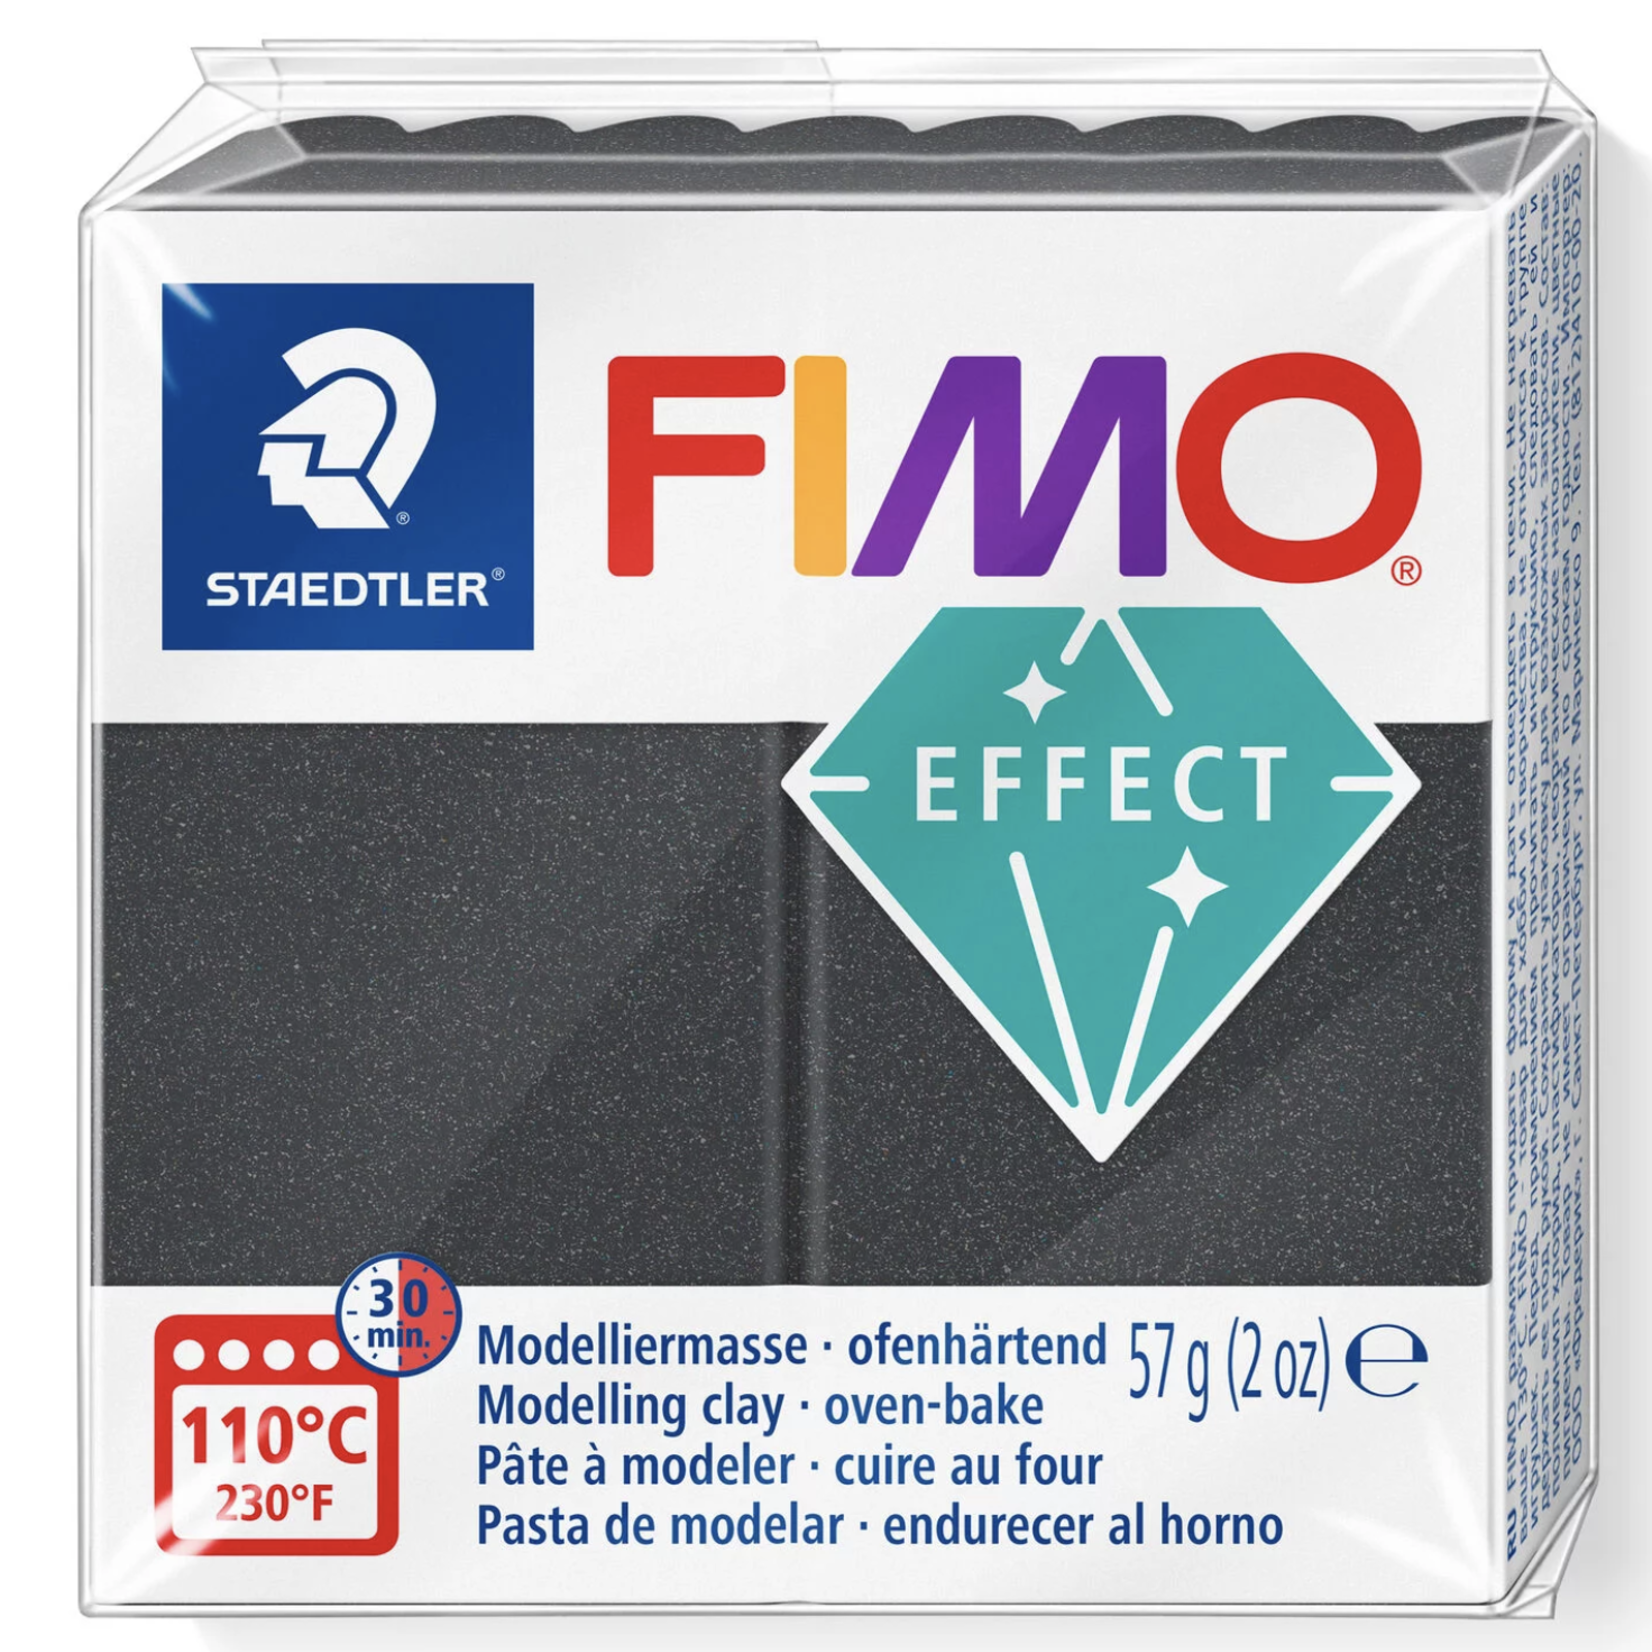 STAEDTLER FIMO EFFECT METALLIC 91 STEEL GREY